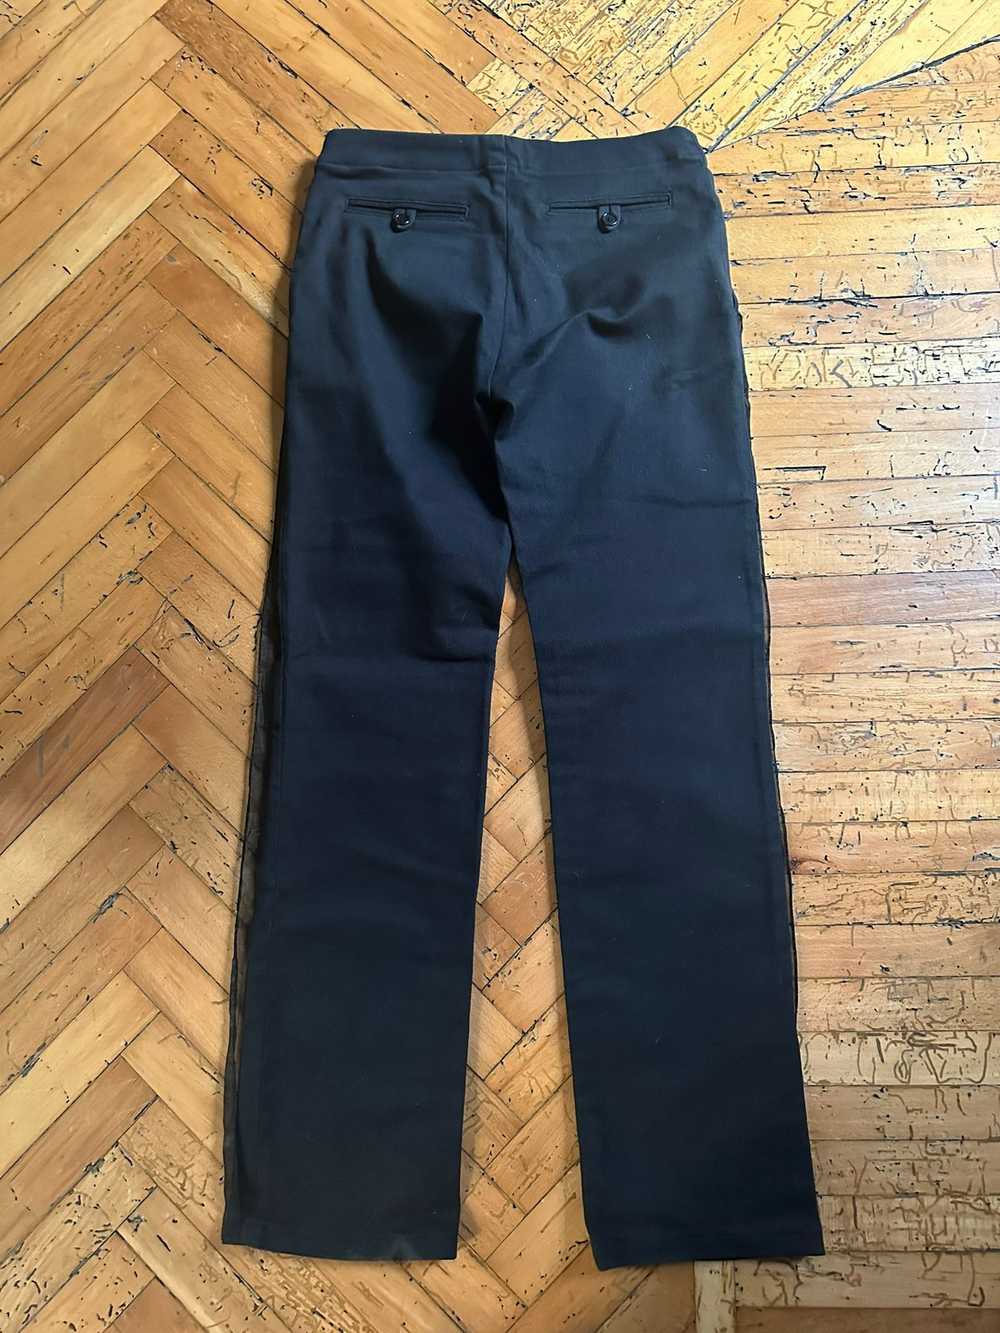 Helmut Lang AW1997 Layered Chiffon Jeans - image 3